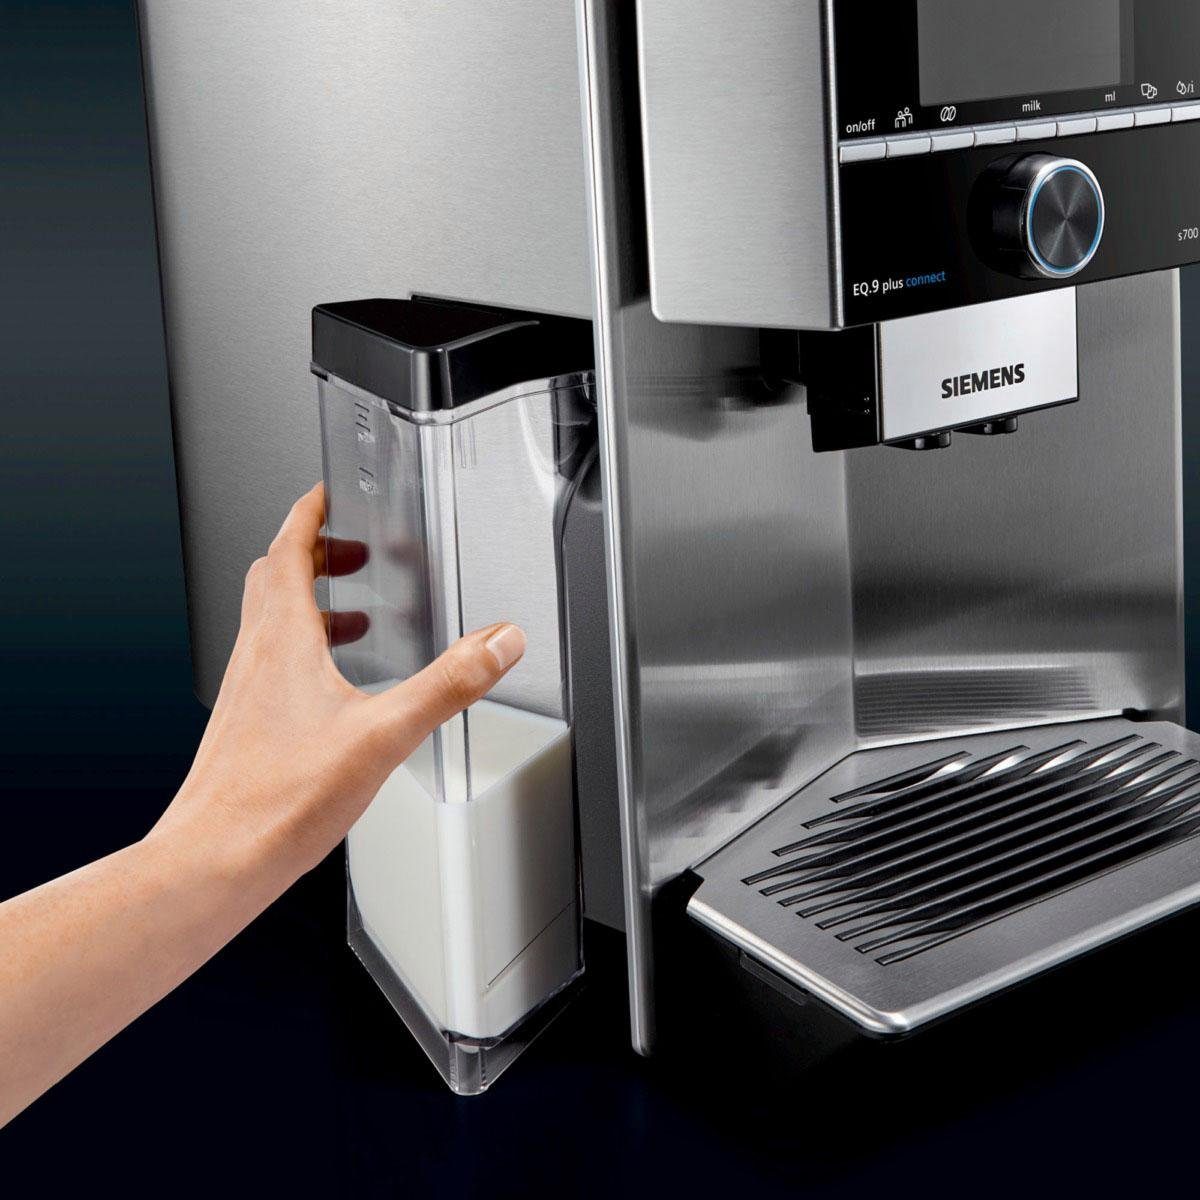 SIEMENS Milchbehälter TZ90009, Zubehör für alle Kaffeevollautomaten der EQ.9  Reihe, praktisch zu verstauen